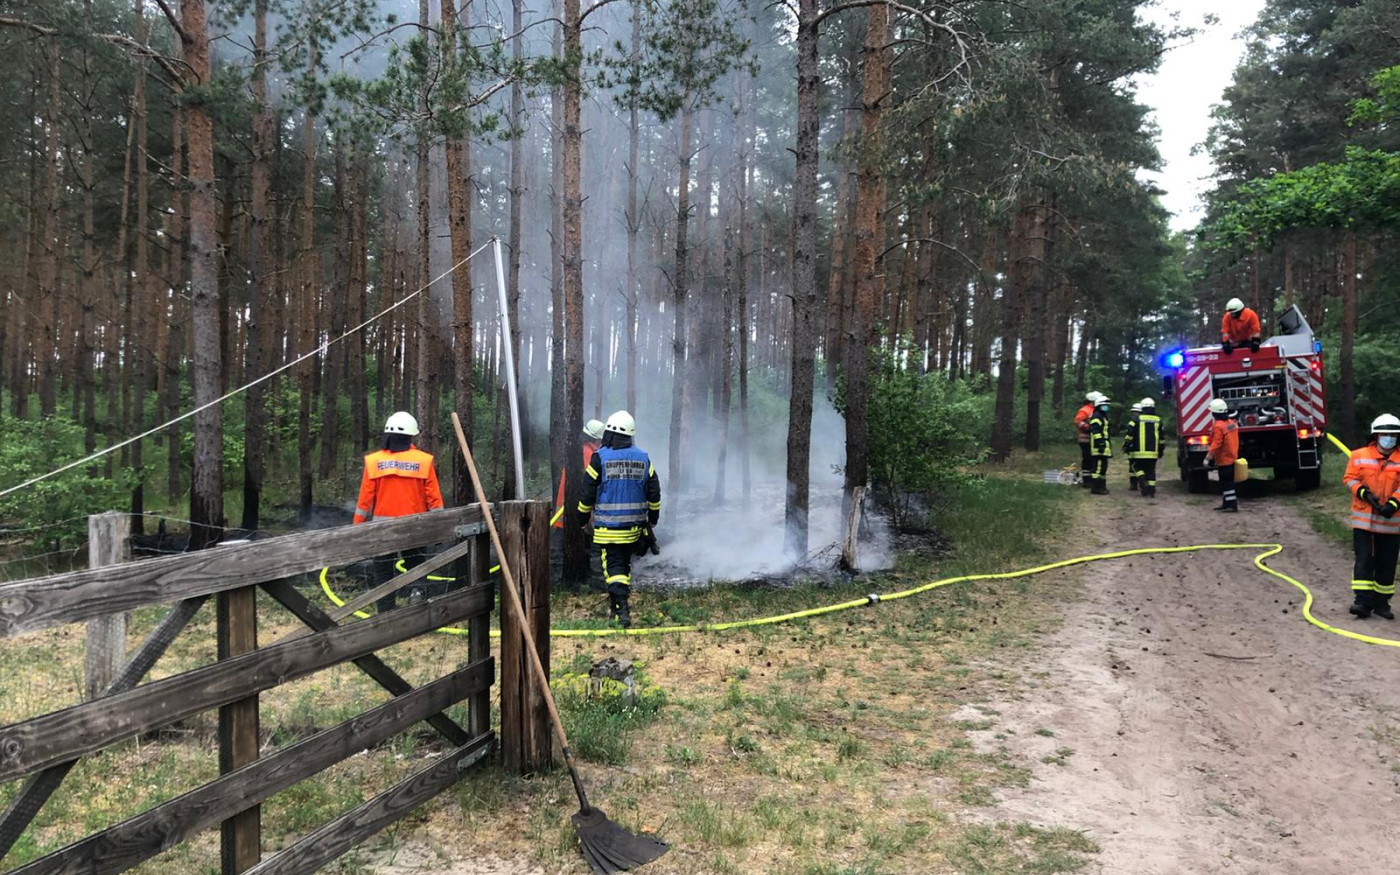 Waldbrand bei Müden - Einsatz der Feuerwehr erfolgreich beendet